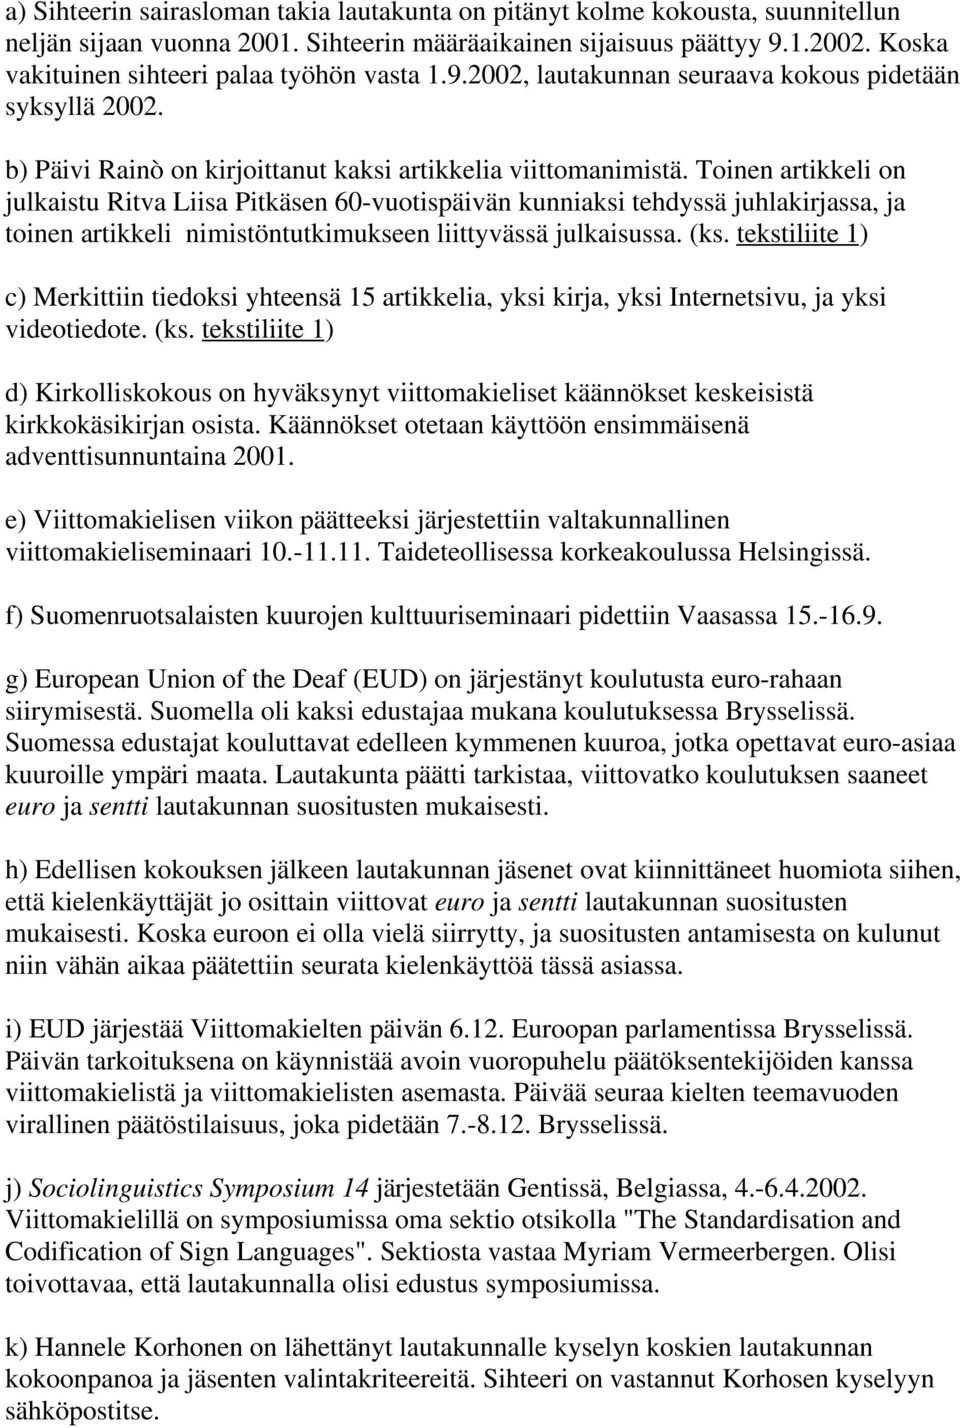 Toinen artikkeli on julkaistu Ritva Liisa Pitkäsen 60-vuotispäivän kunniaksi tehdyssä juhlakirjassa, ja toinen artikkeli nimistöntutkimukseen liittyvässä julkaisussa. (ks.